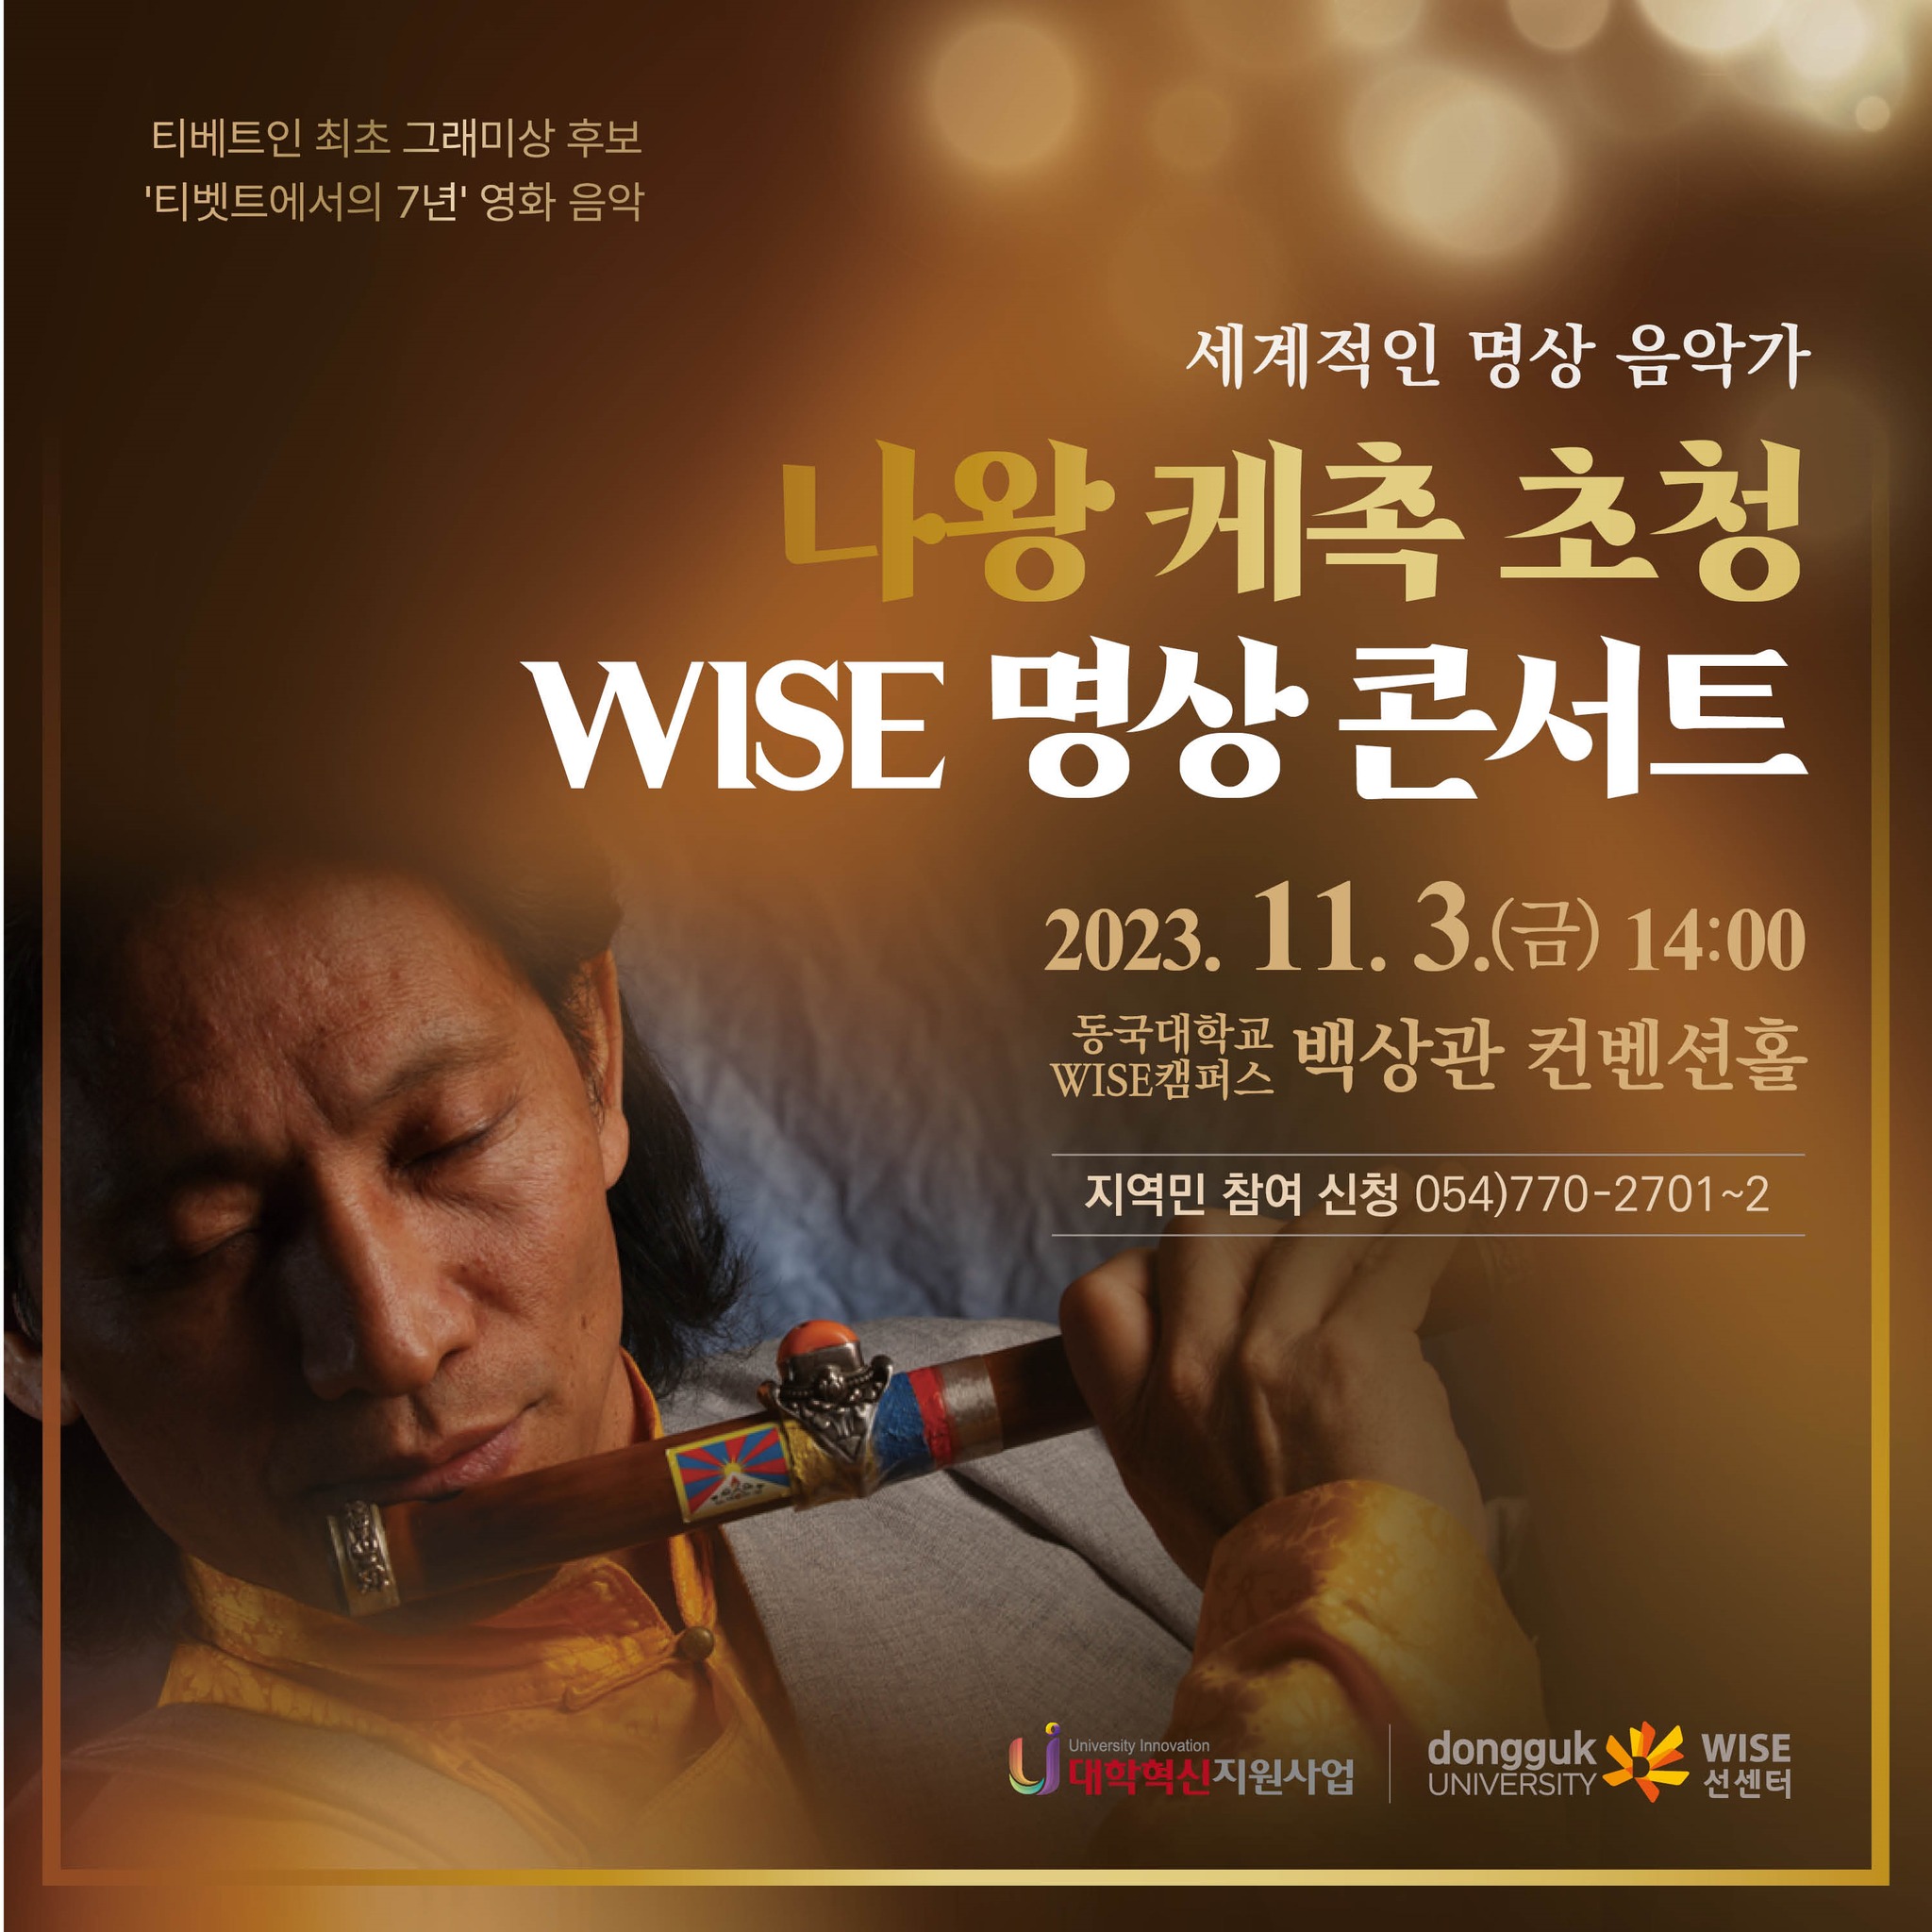 세계적인 명상 음악가 '나왕 케촉' 초청 WISE 명상 콘서트 개최